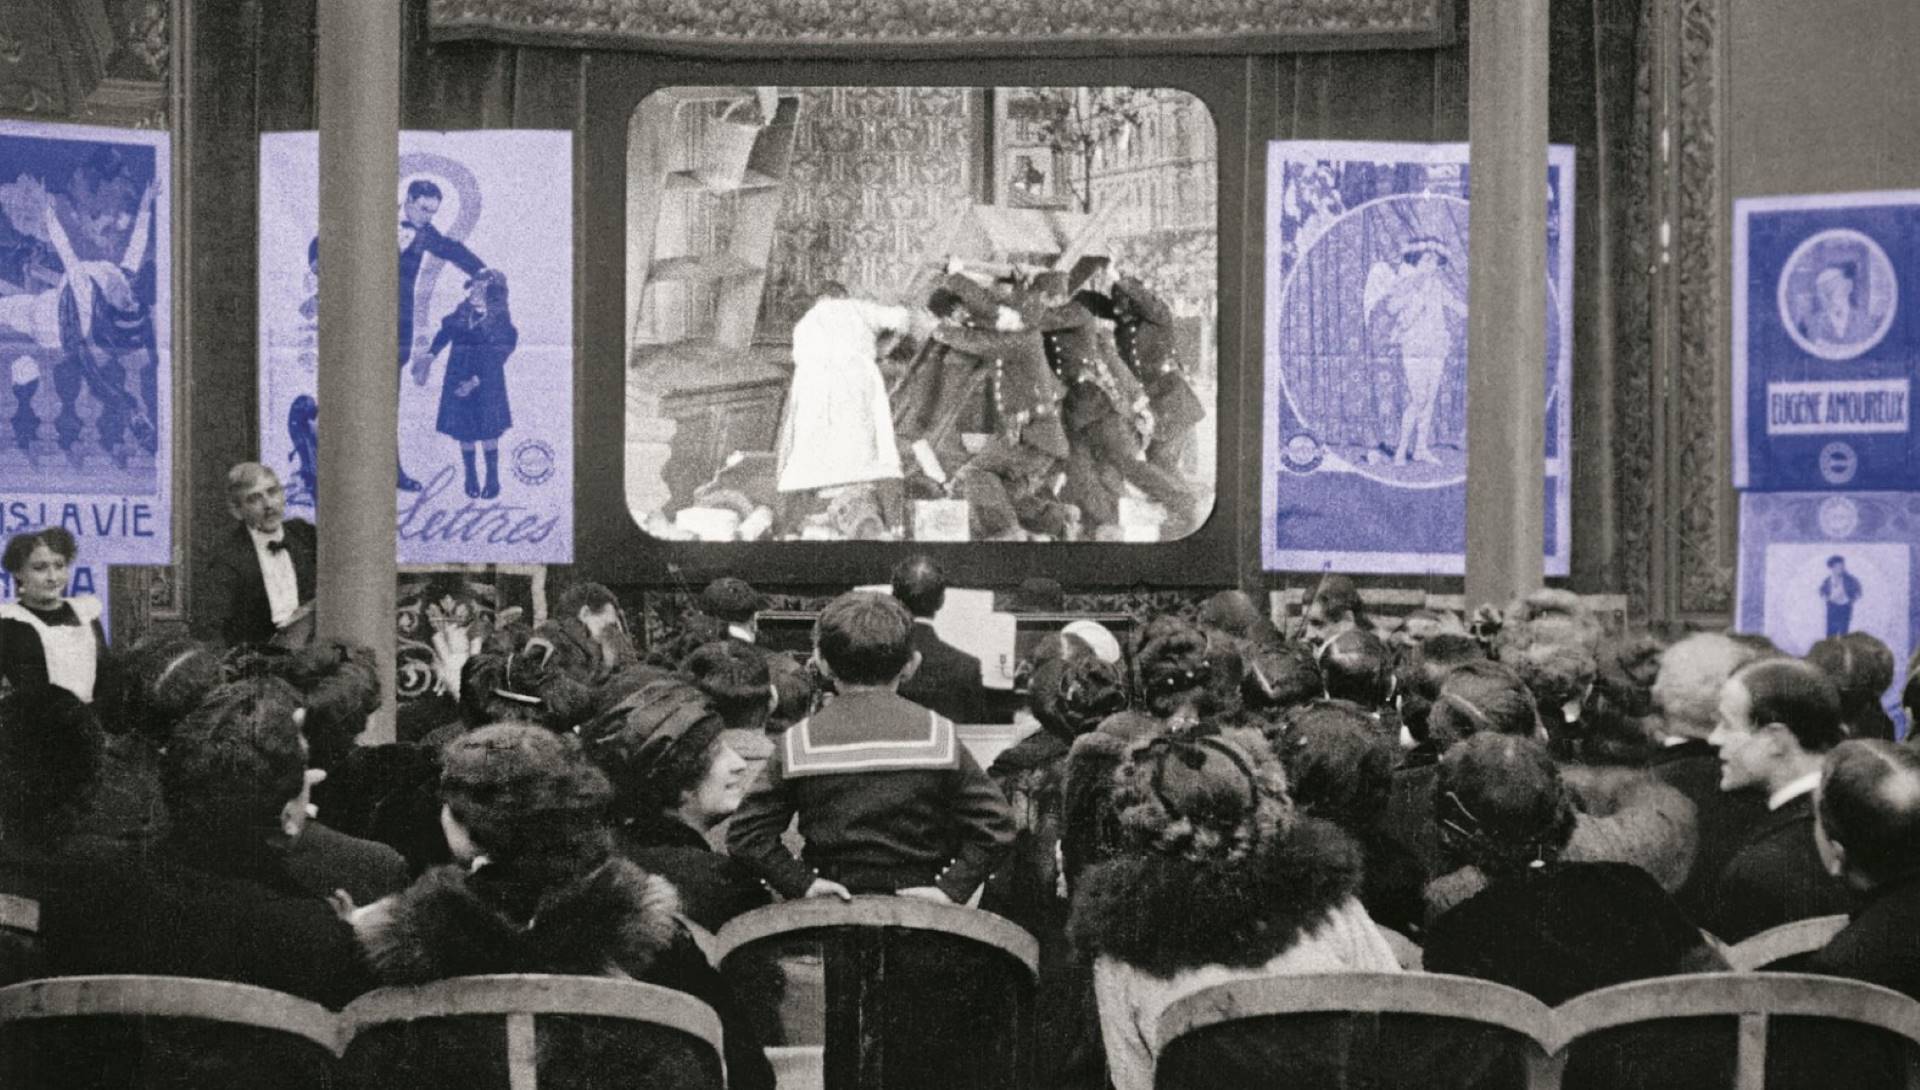 L'exposition « Enfin le cinéma ! » s'attarde sur la relation entre le cinéma et les autres formes d'art, même avant son invention en 1895.